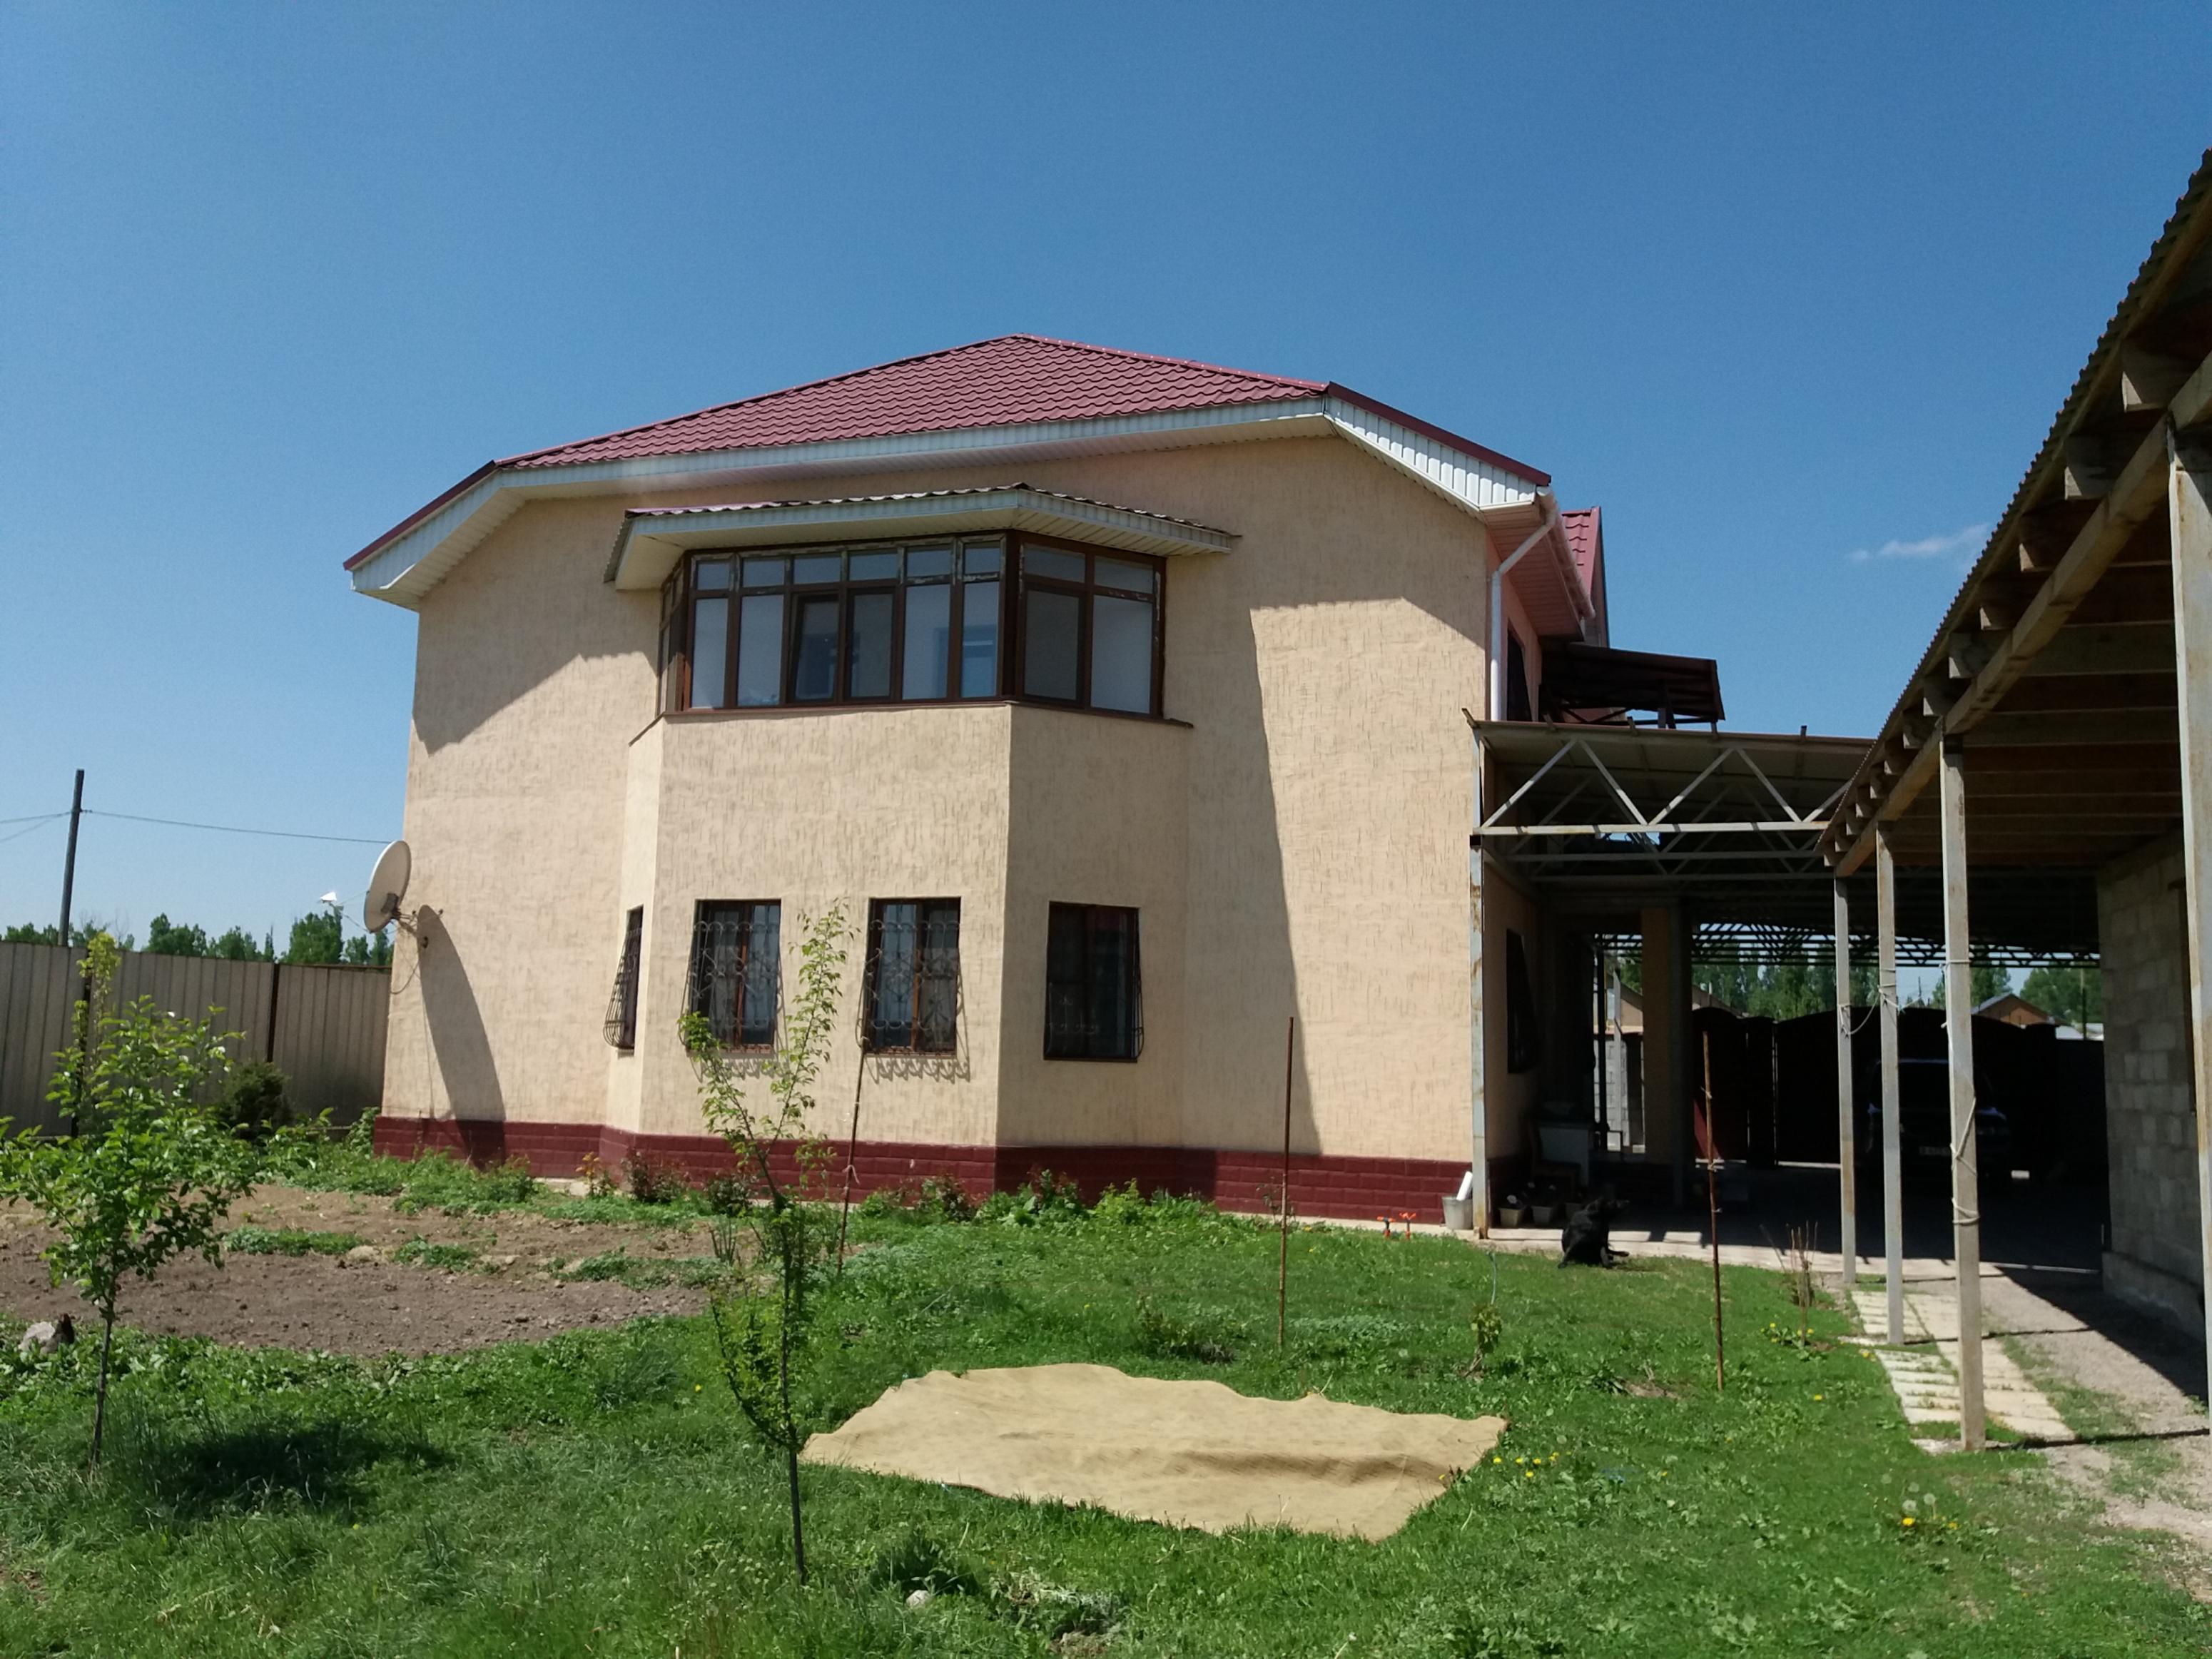 Участок 1000 кв м. Мынбаево Алматинская область. Продажа домов в Косшы.